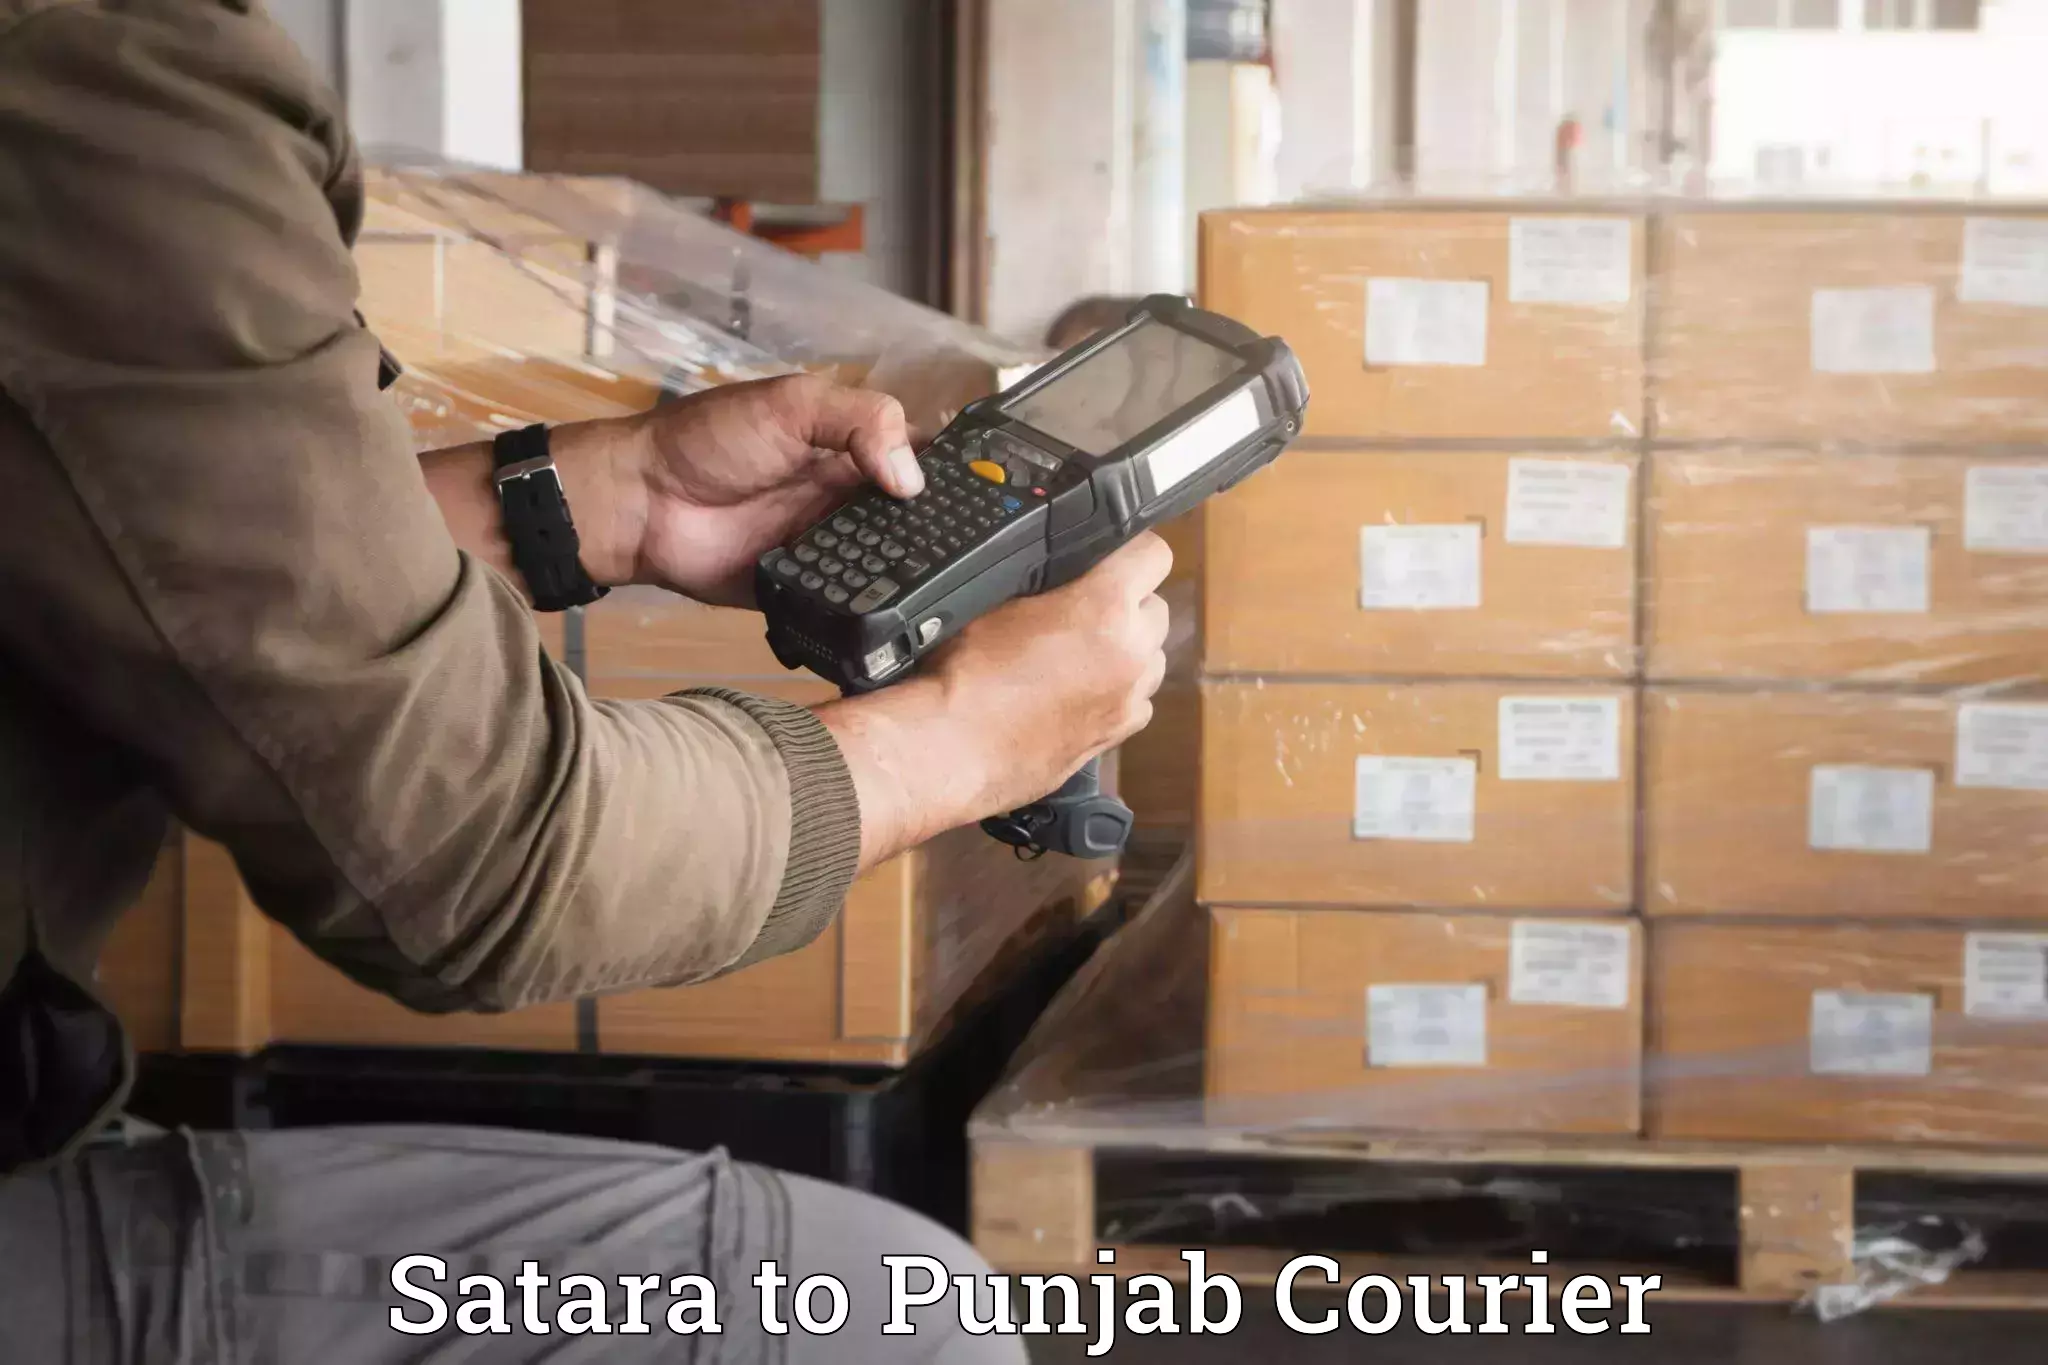 Luggage shipping service Satara to Central University of Punjab Bathinda